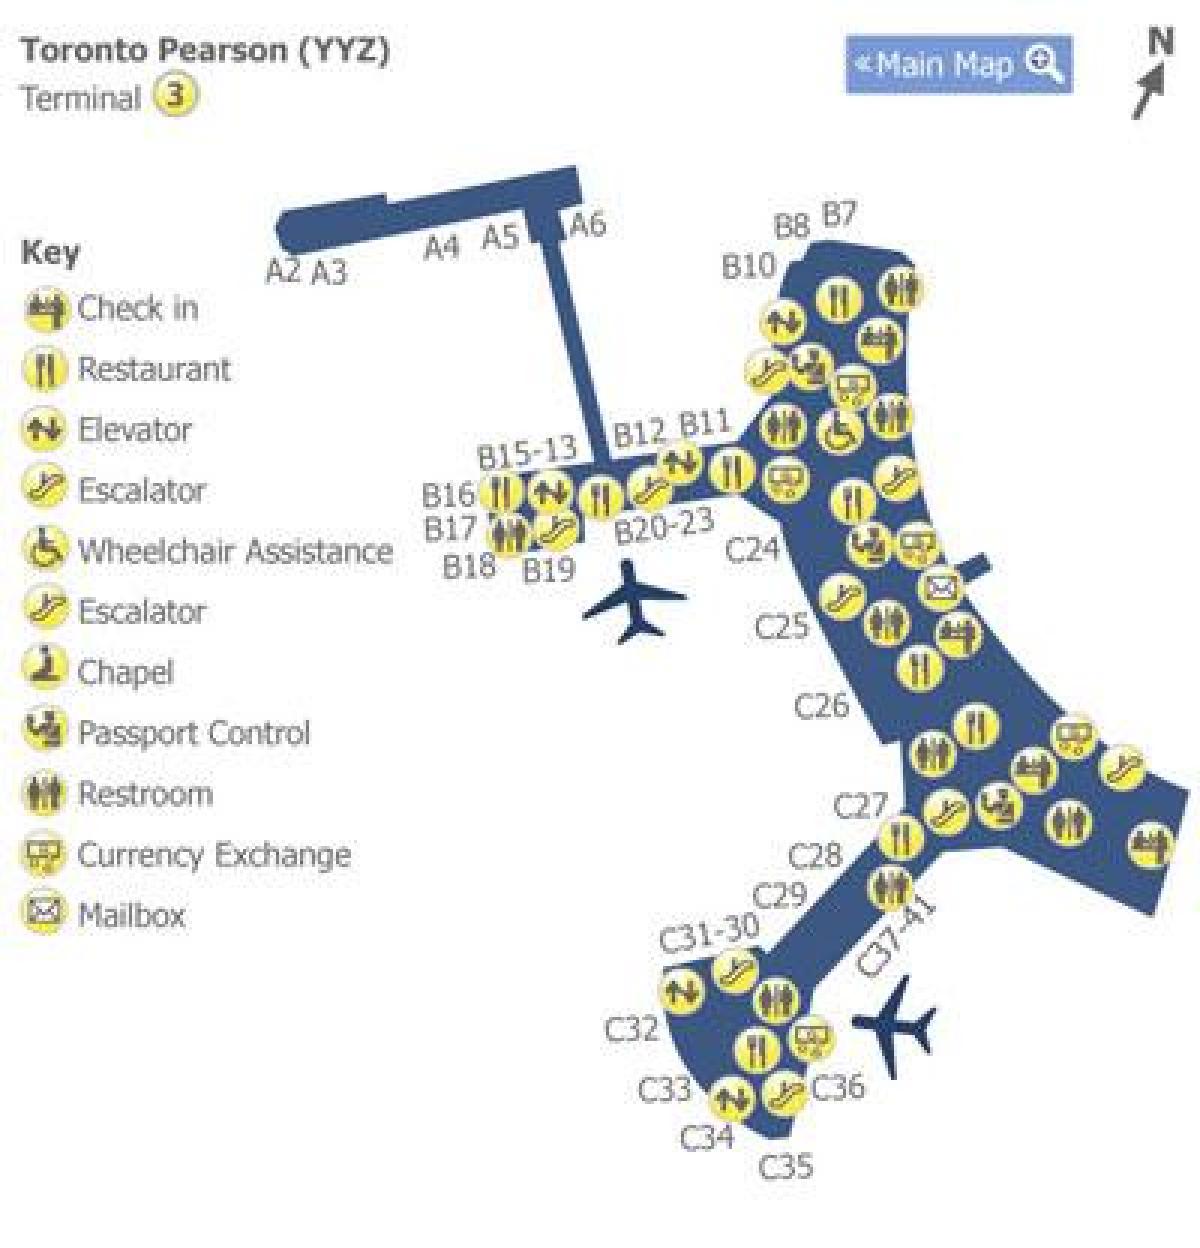 Térkép Toronto-Pearson repülőtéri terminál 3